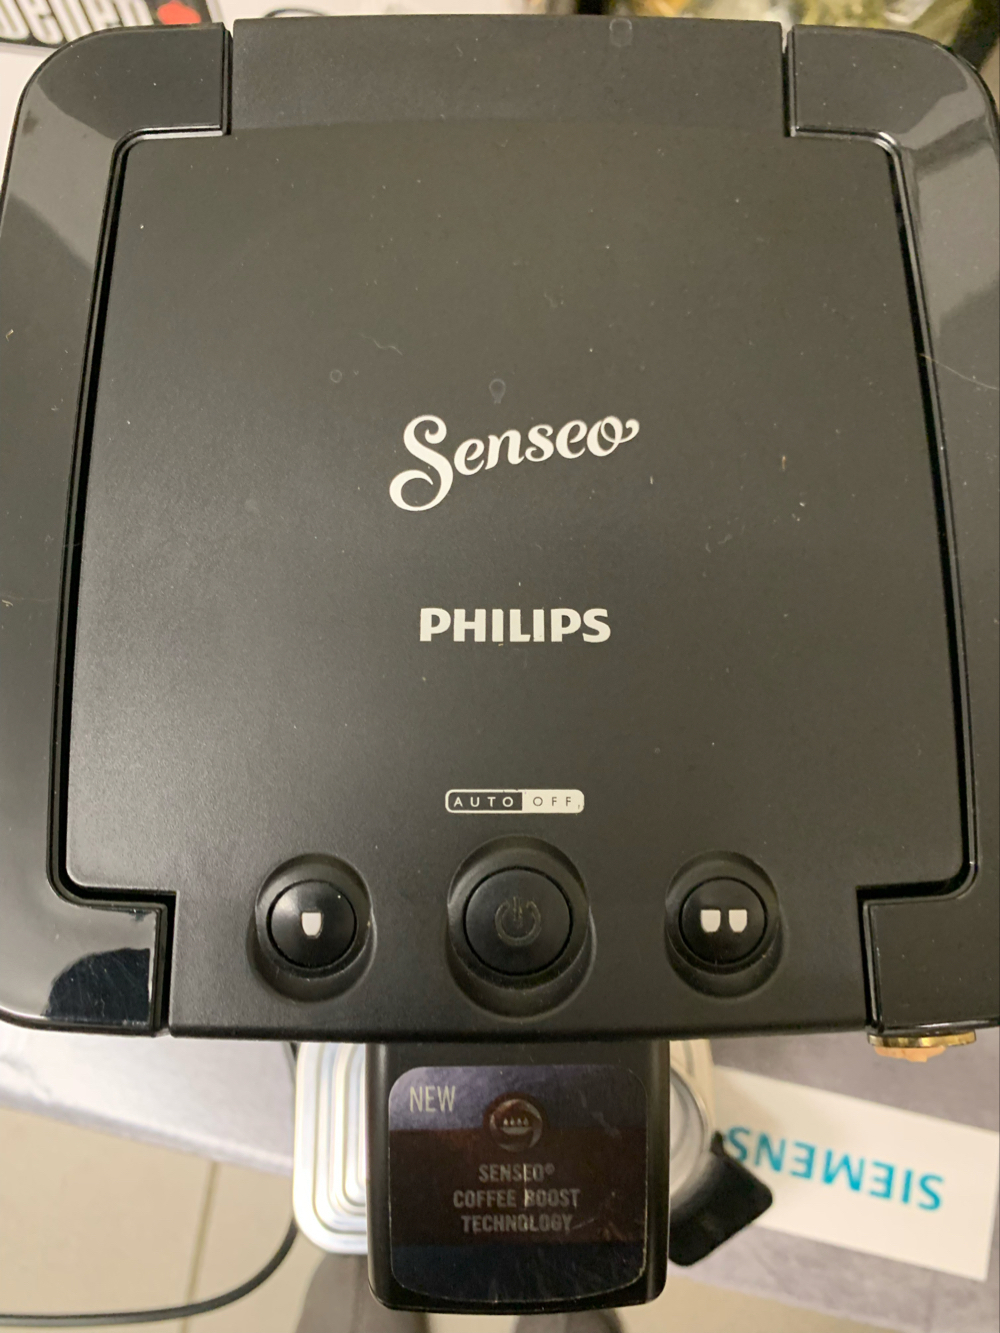 Padkaffeemaschine Senseo Philips